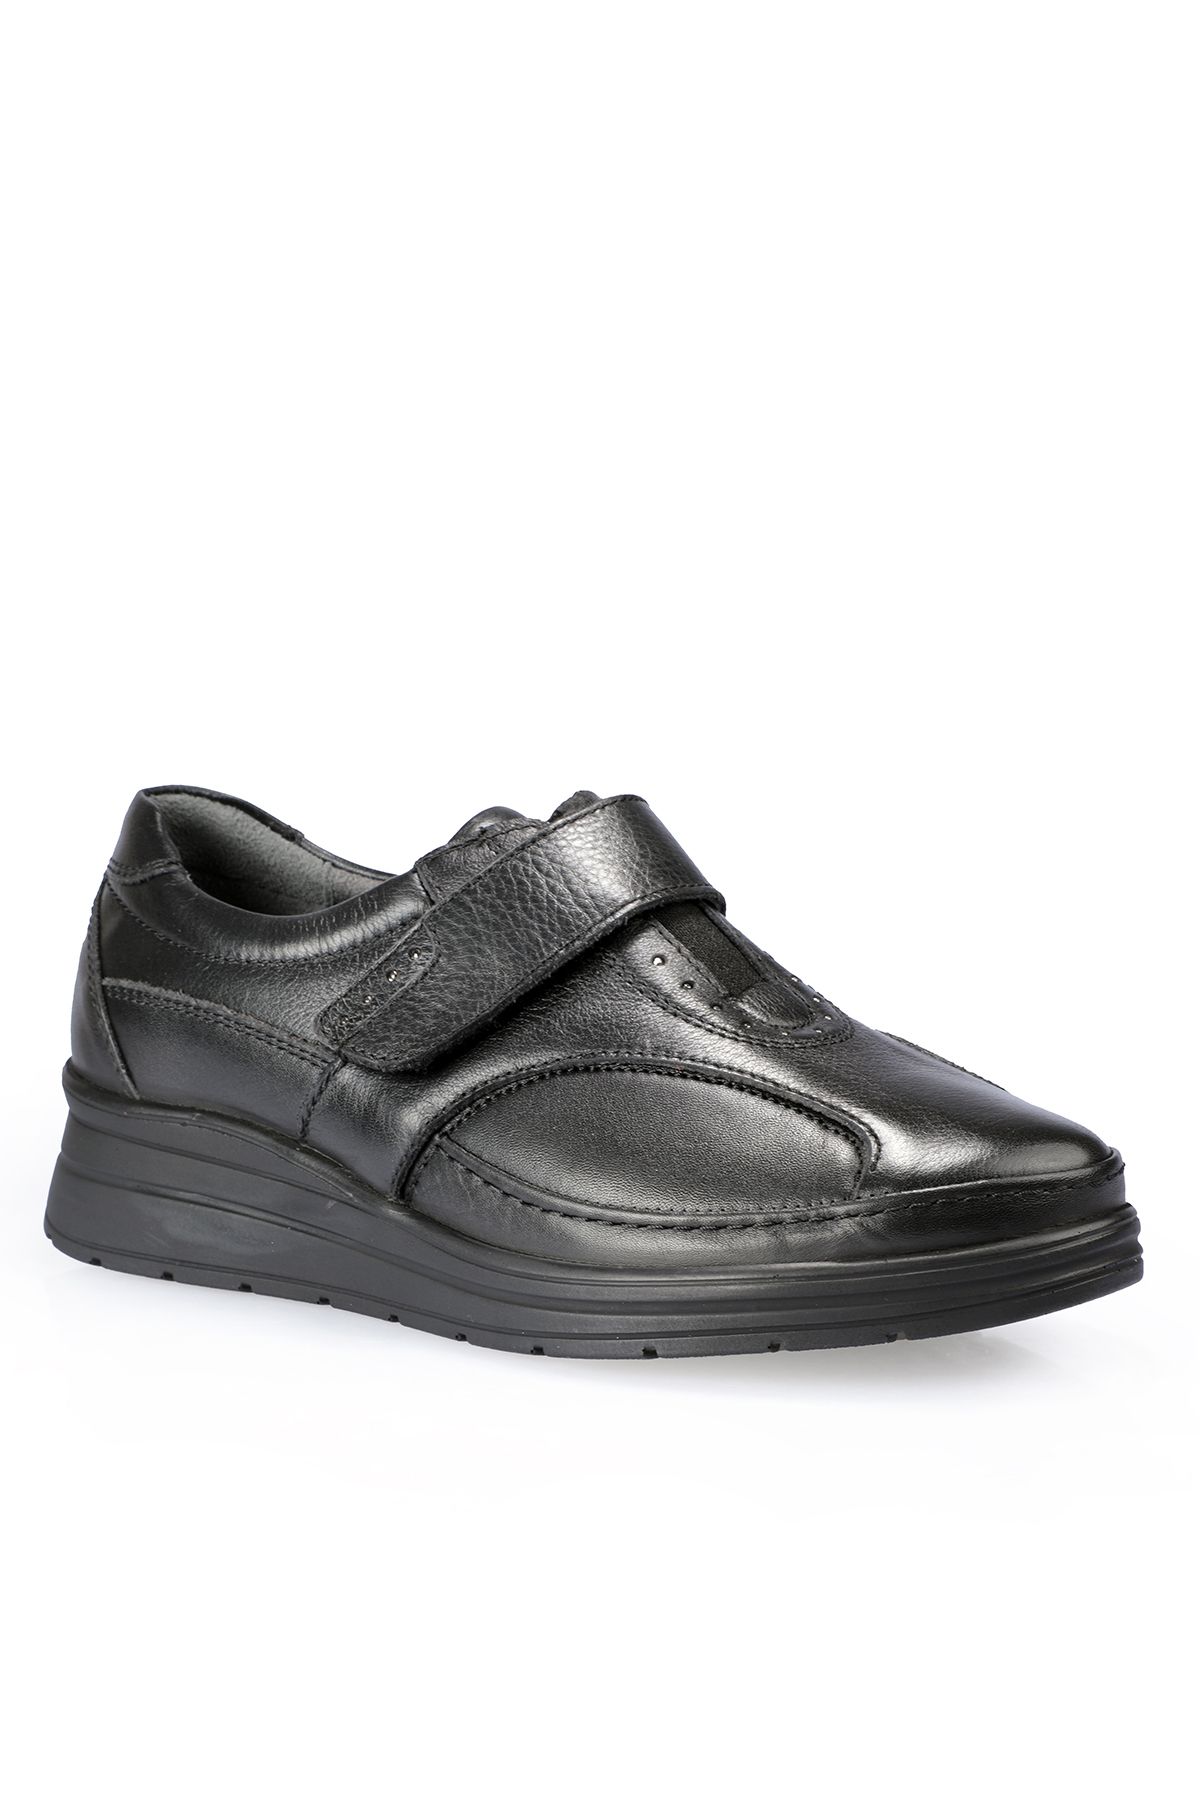 Forelli LARISA-H Comfort Kadın Ayakkabı Siyah